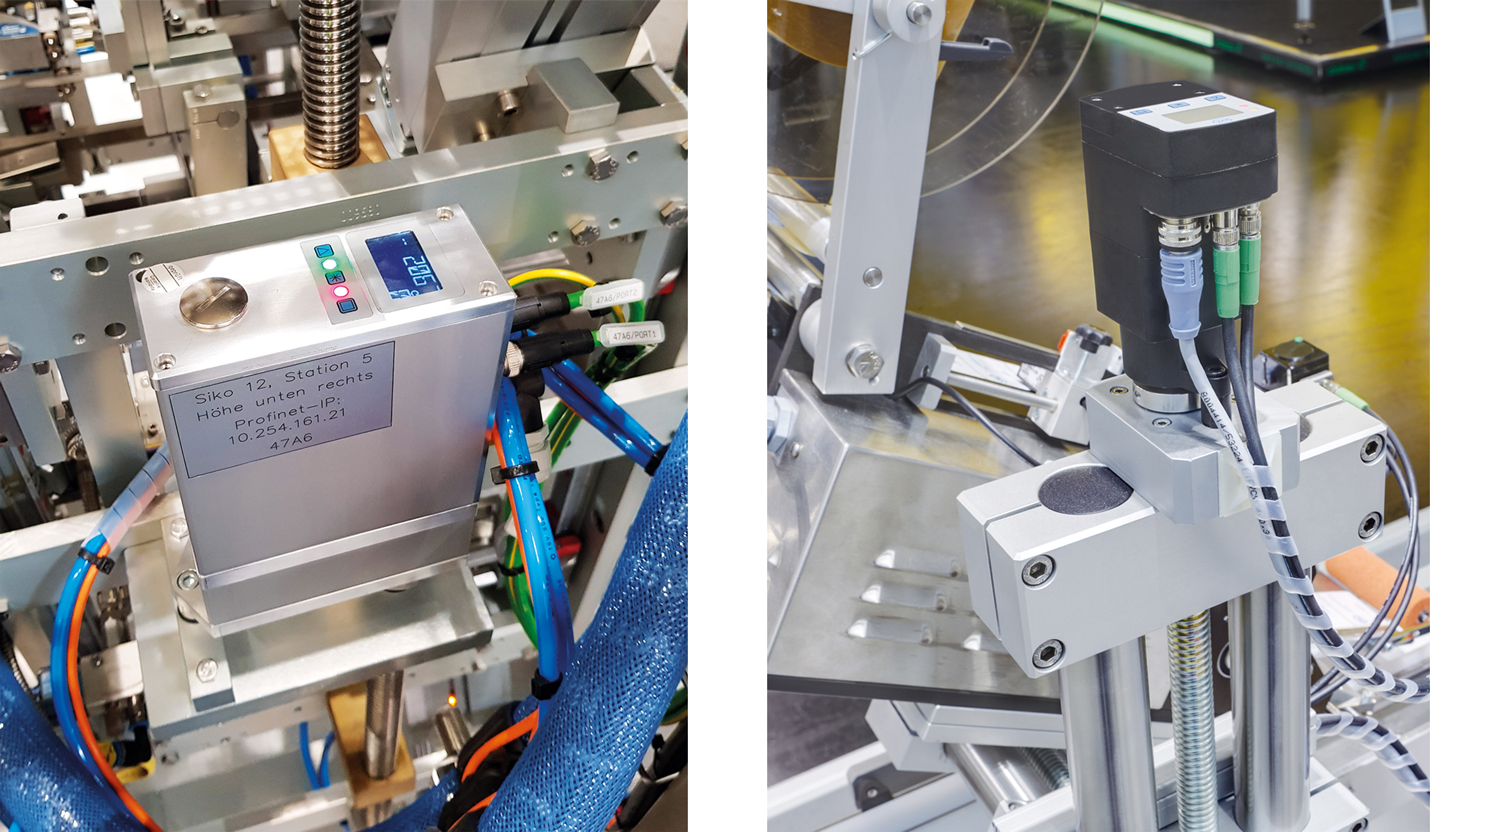 SIKO azionamenti di posizionamento tipo AG24 e AG05 installati su macchine per confezionamento ed etichettatura